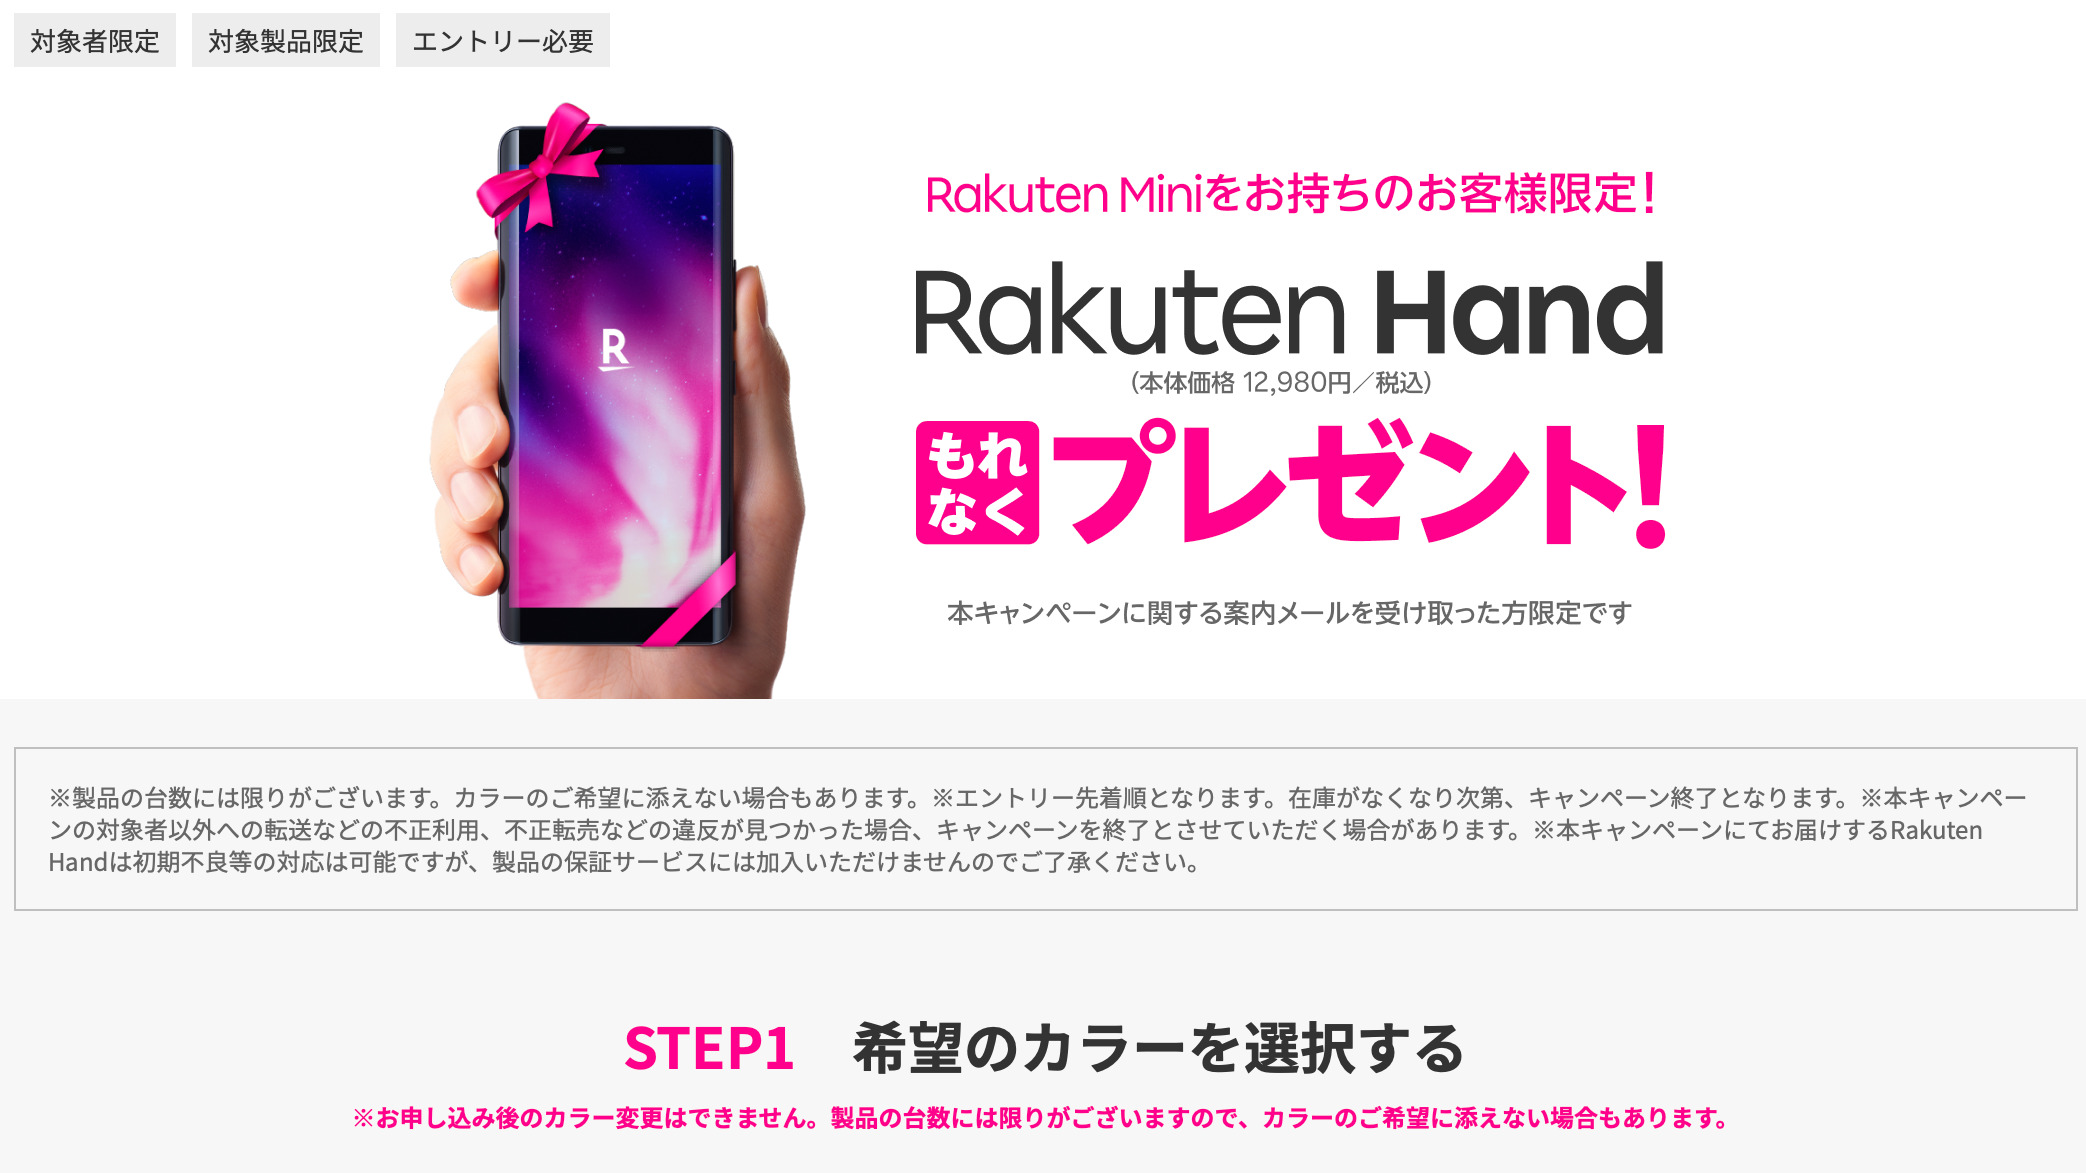 Rakuten Hand プレゼントキャンペーン